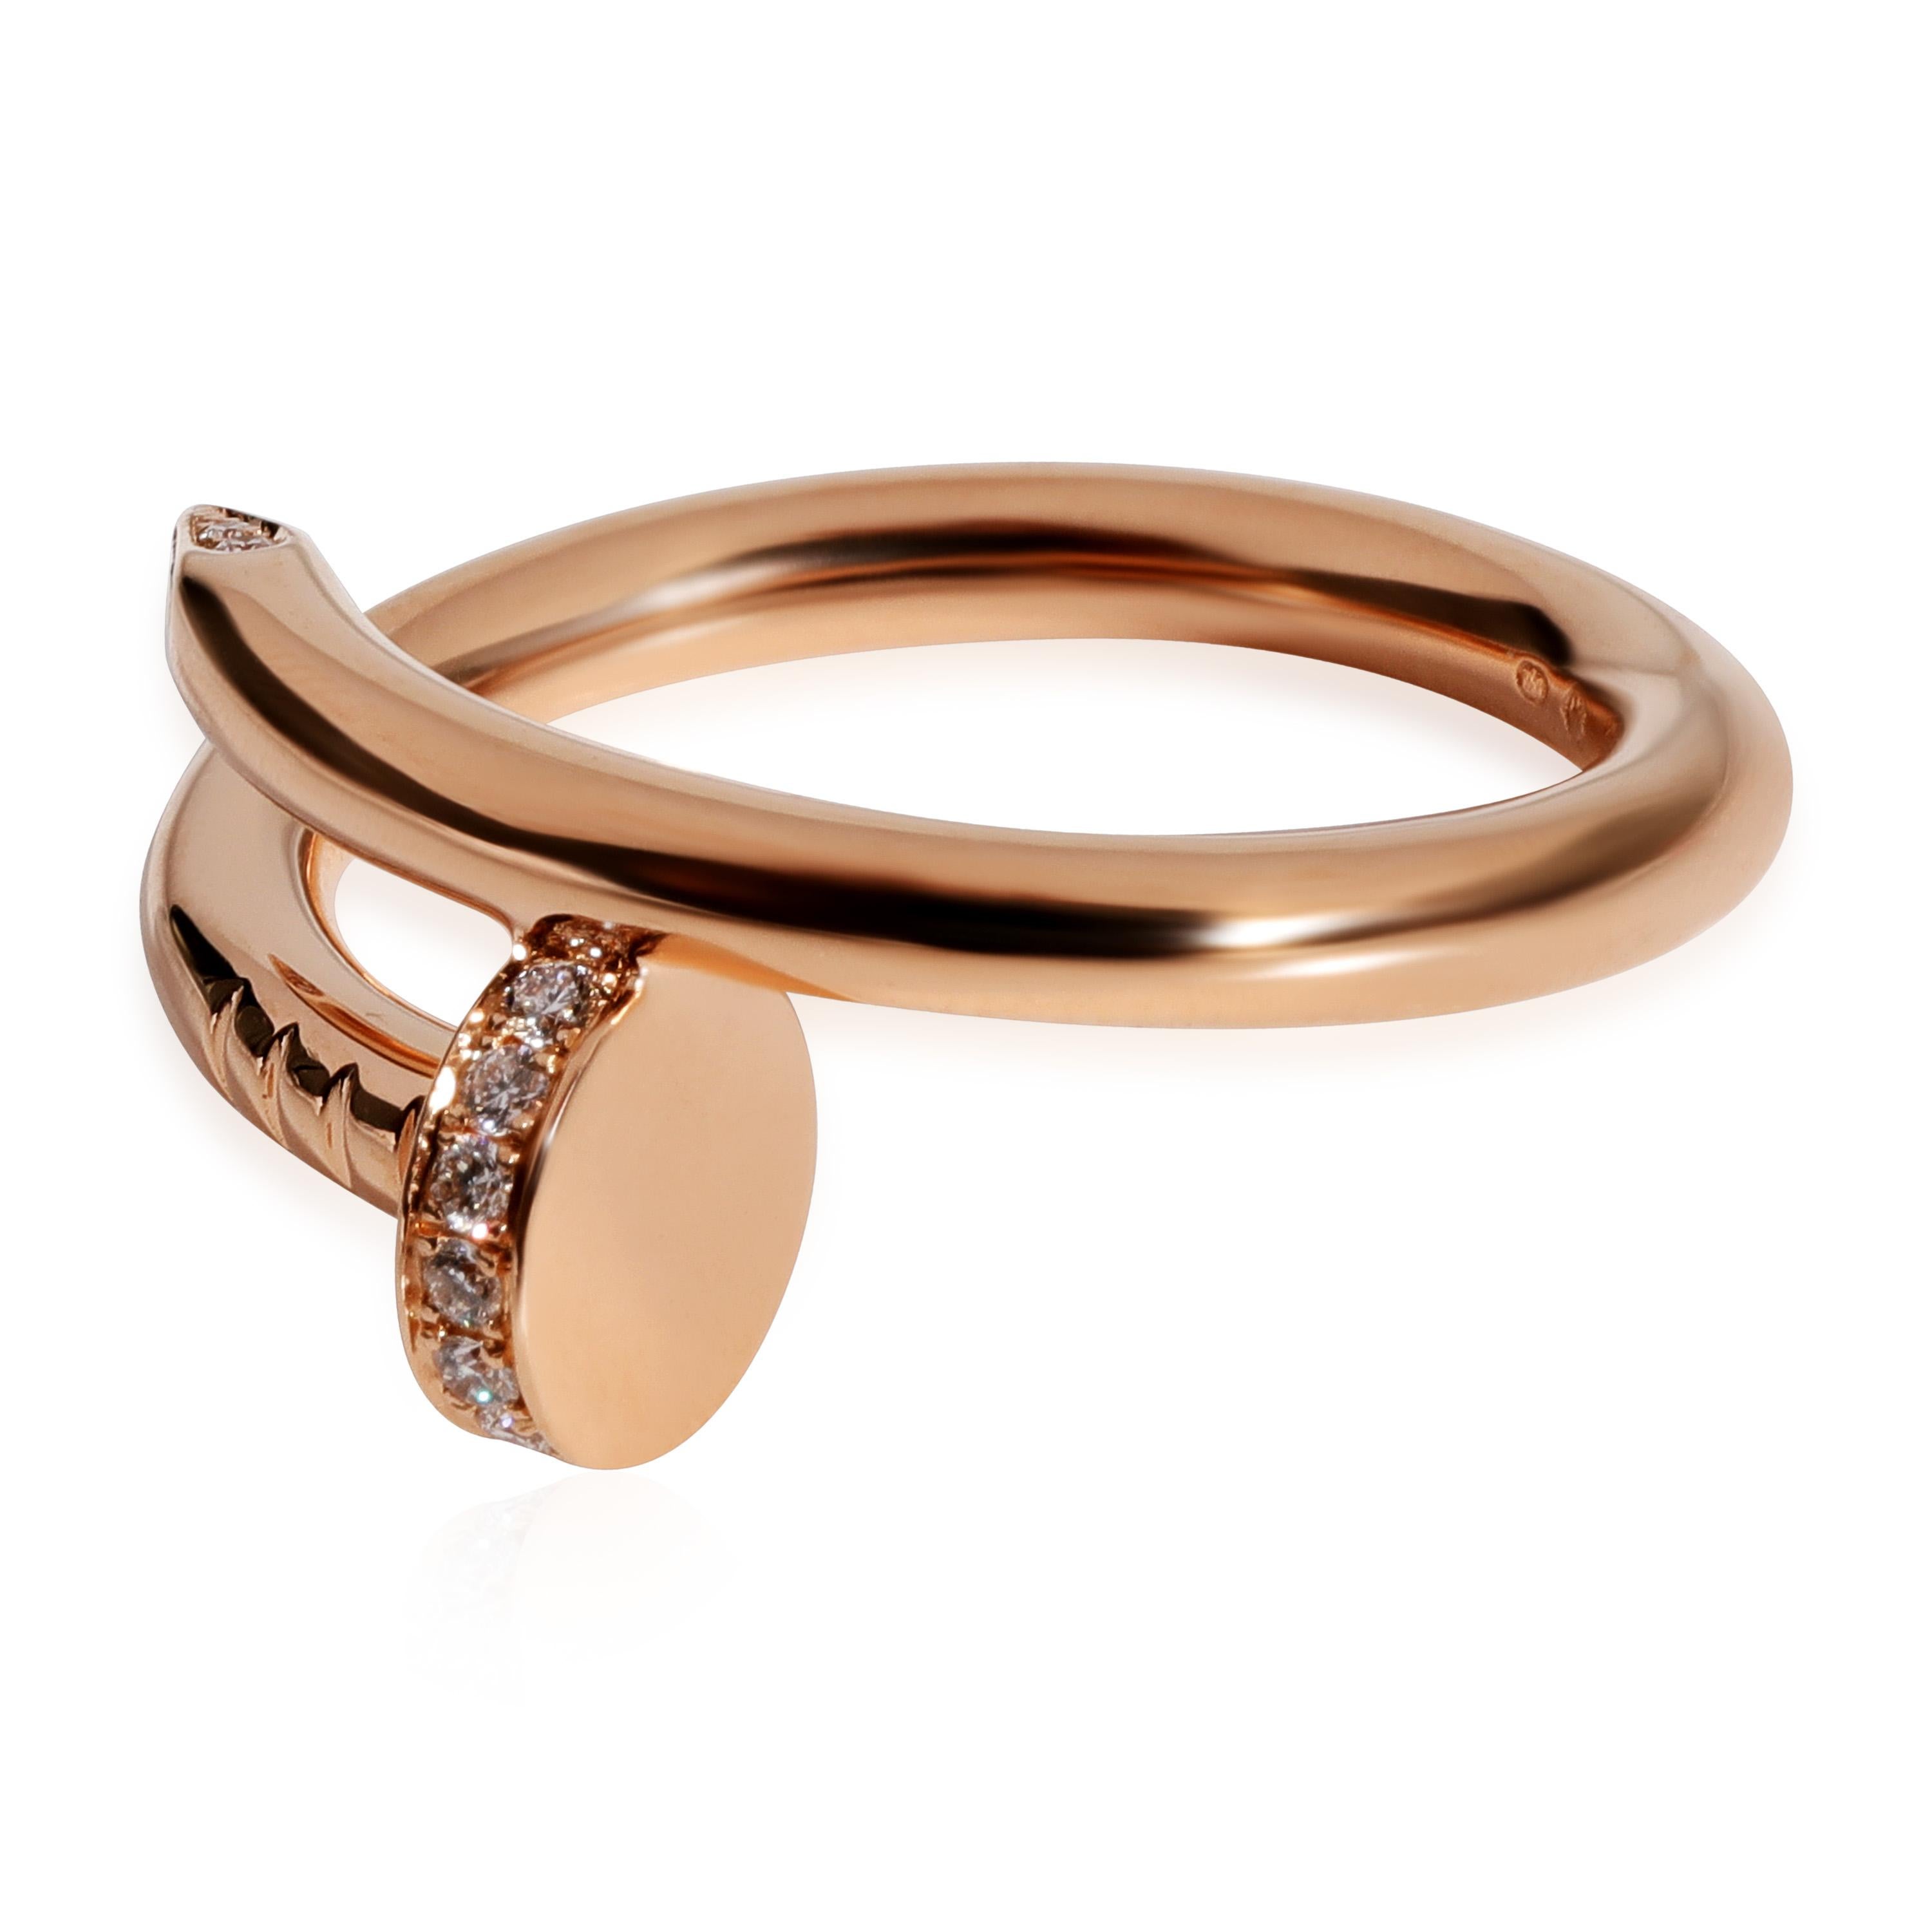 CRB6062517 - Juste un Clou bracelet, small model - Rose gold - Cartier